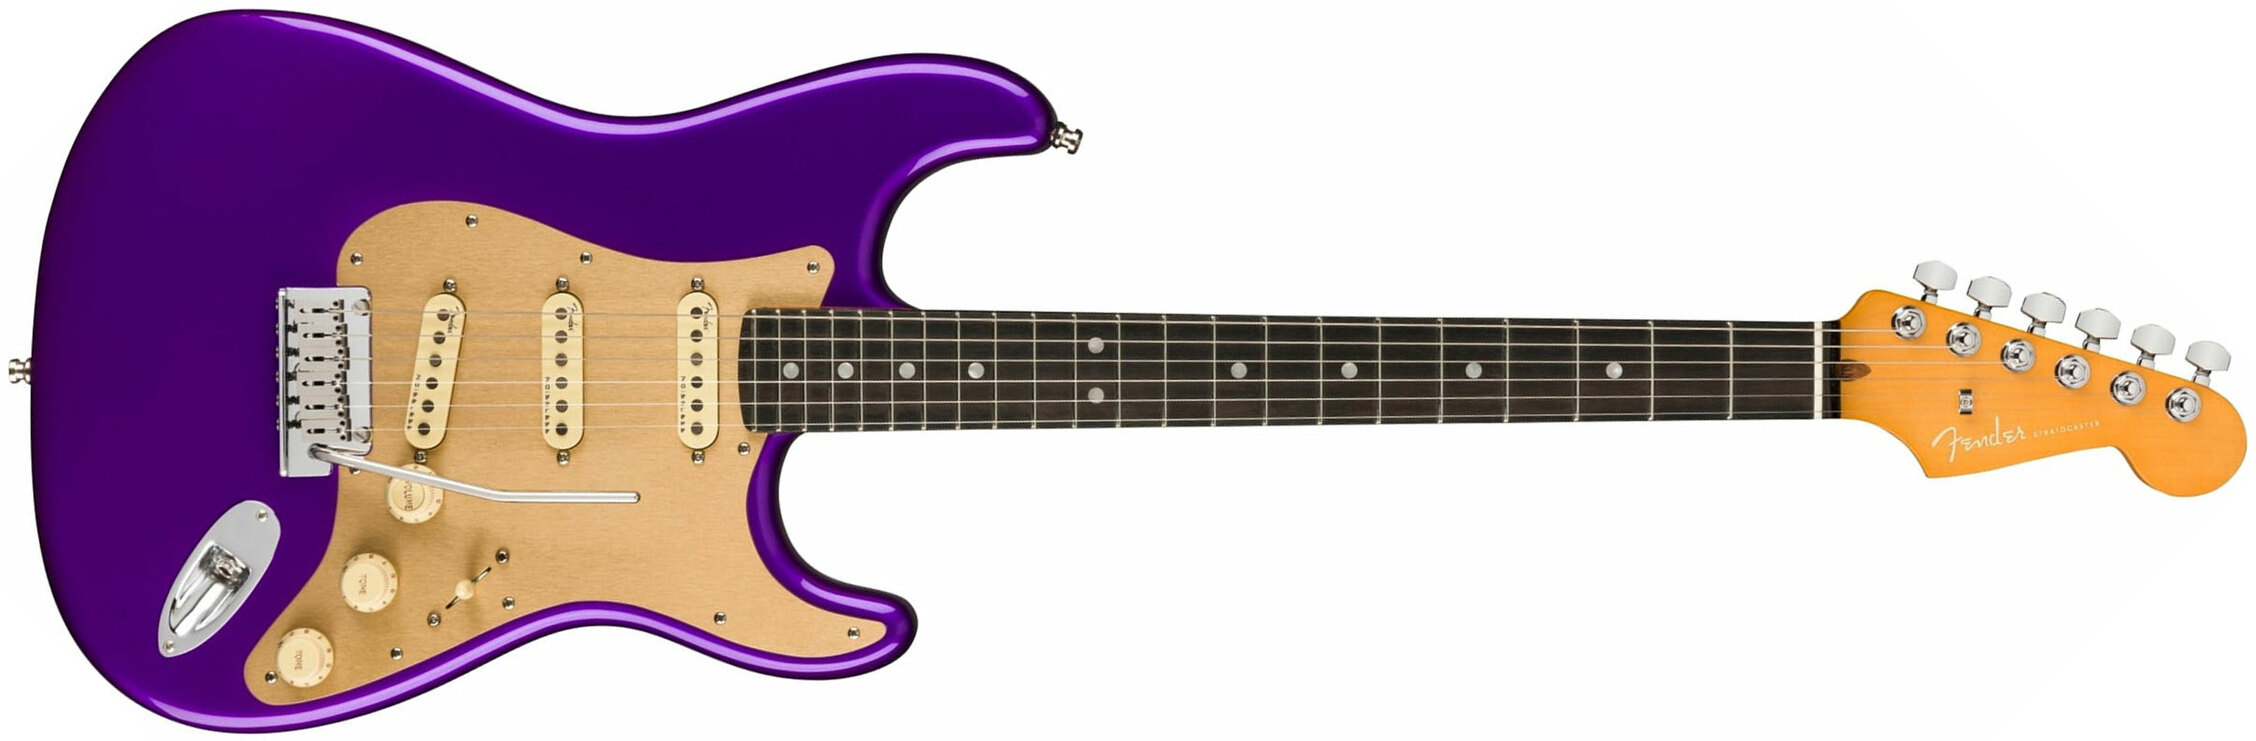 Fender Strat American Ultra Ltd Usa 3s Trem Eb - Plum Metallic - Elektrische gitaar in Str-vorm - Main picture